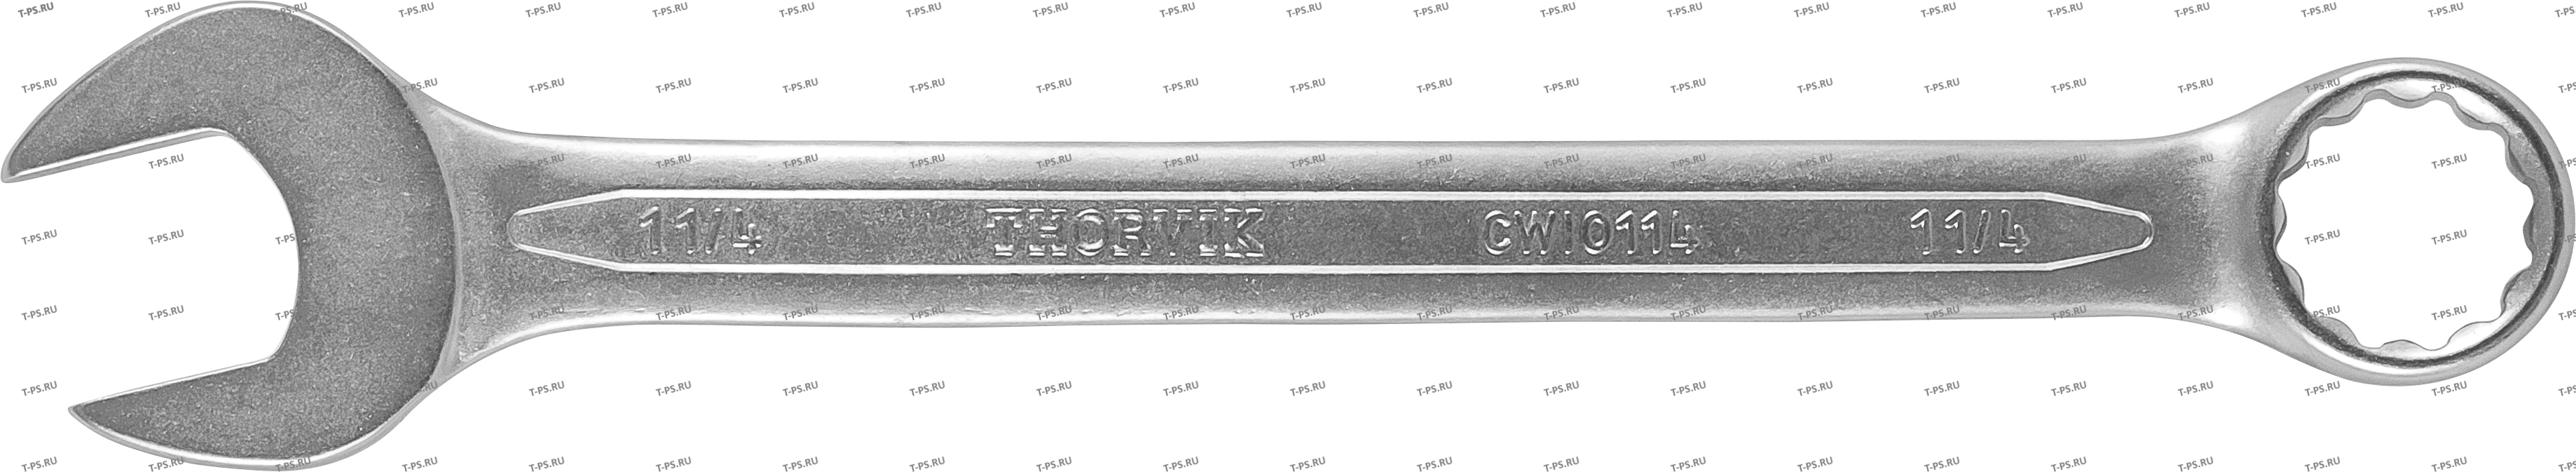 CWI1516 Ключ гаечный комбинированный дюймовый, 1516